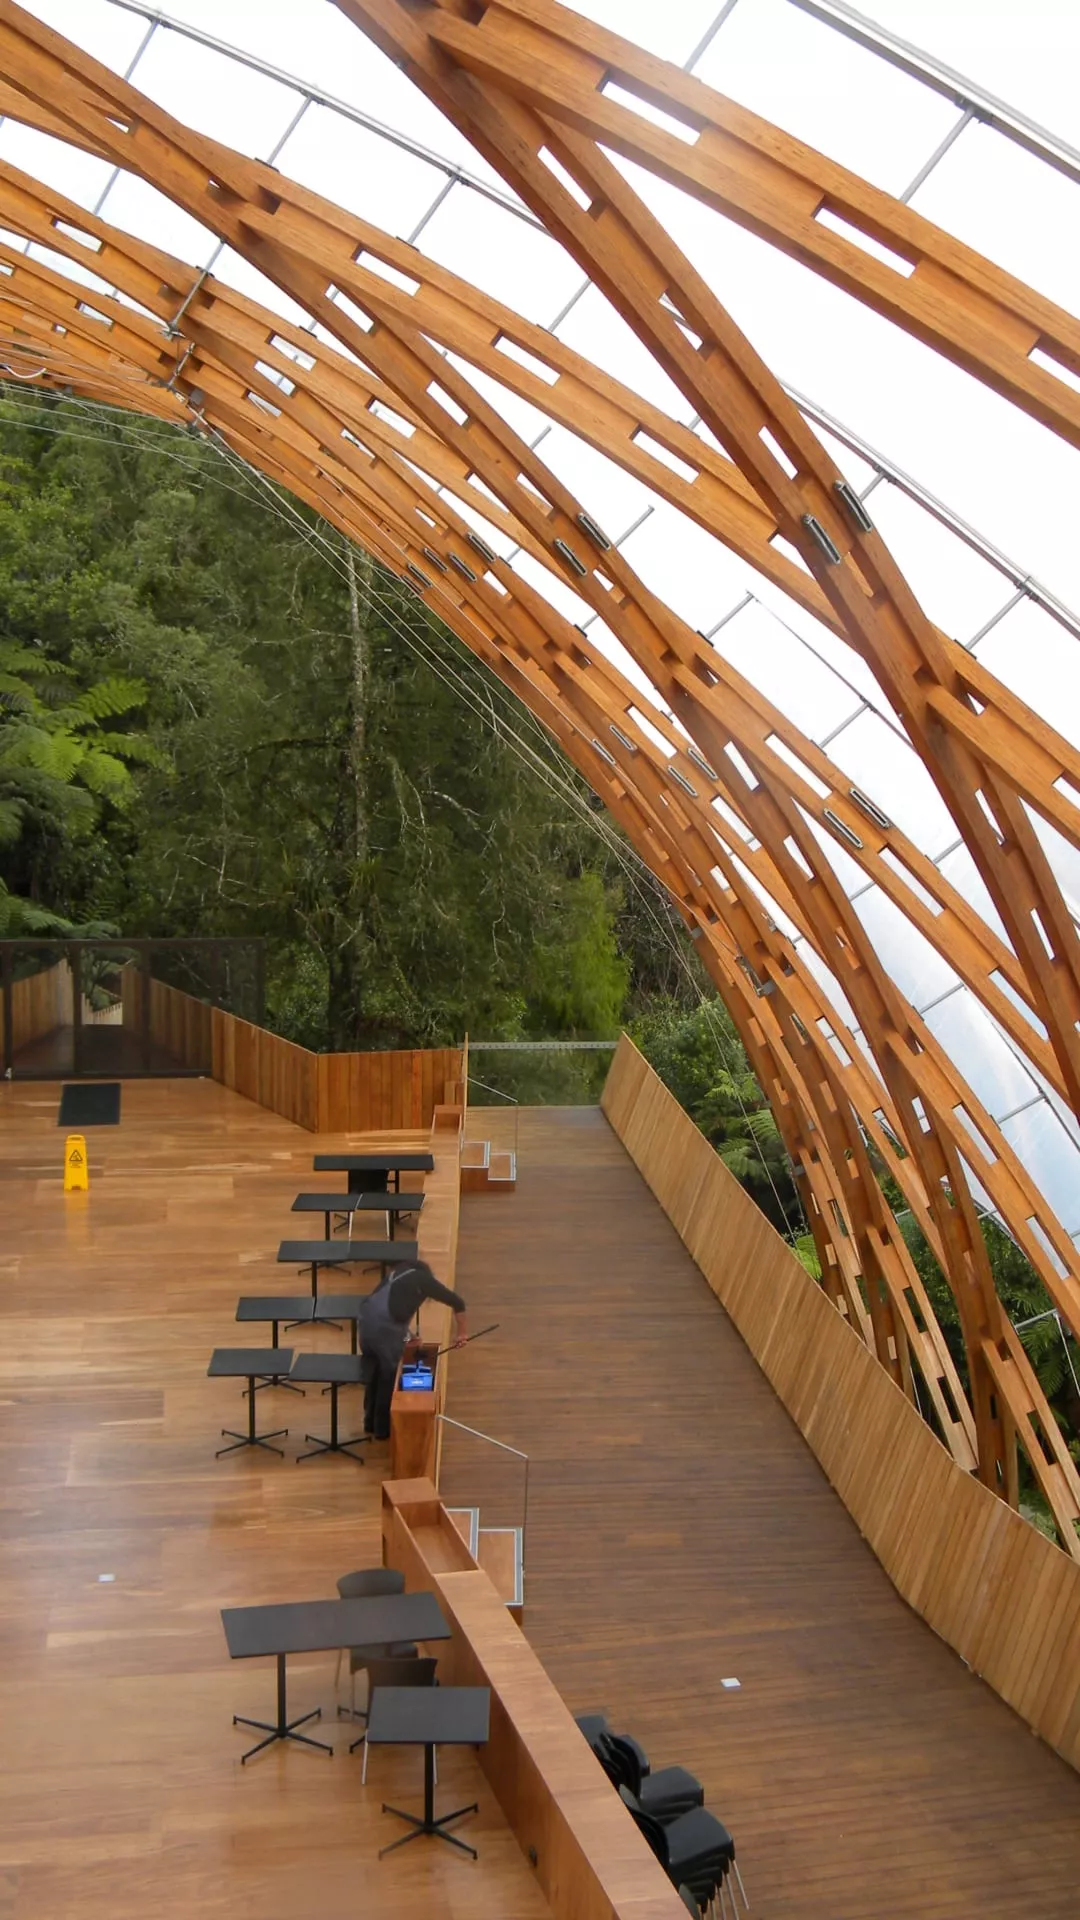 Das Design des Besucherzentrums der Waitomo Glowworm Caves war eine Gelegenheit zu zeigen, wie Technik, Umwelt und lokale Kultur in Harmonie miteinander verschmelzen.